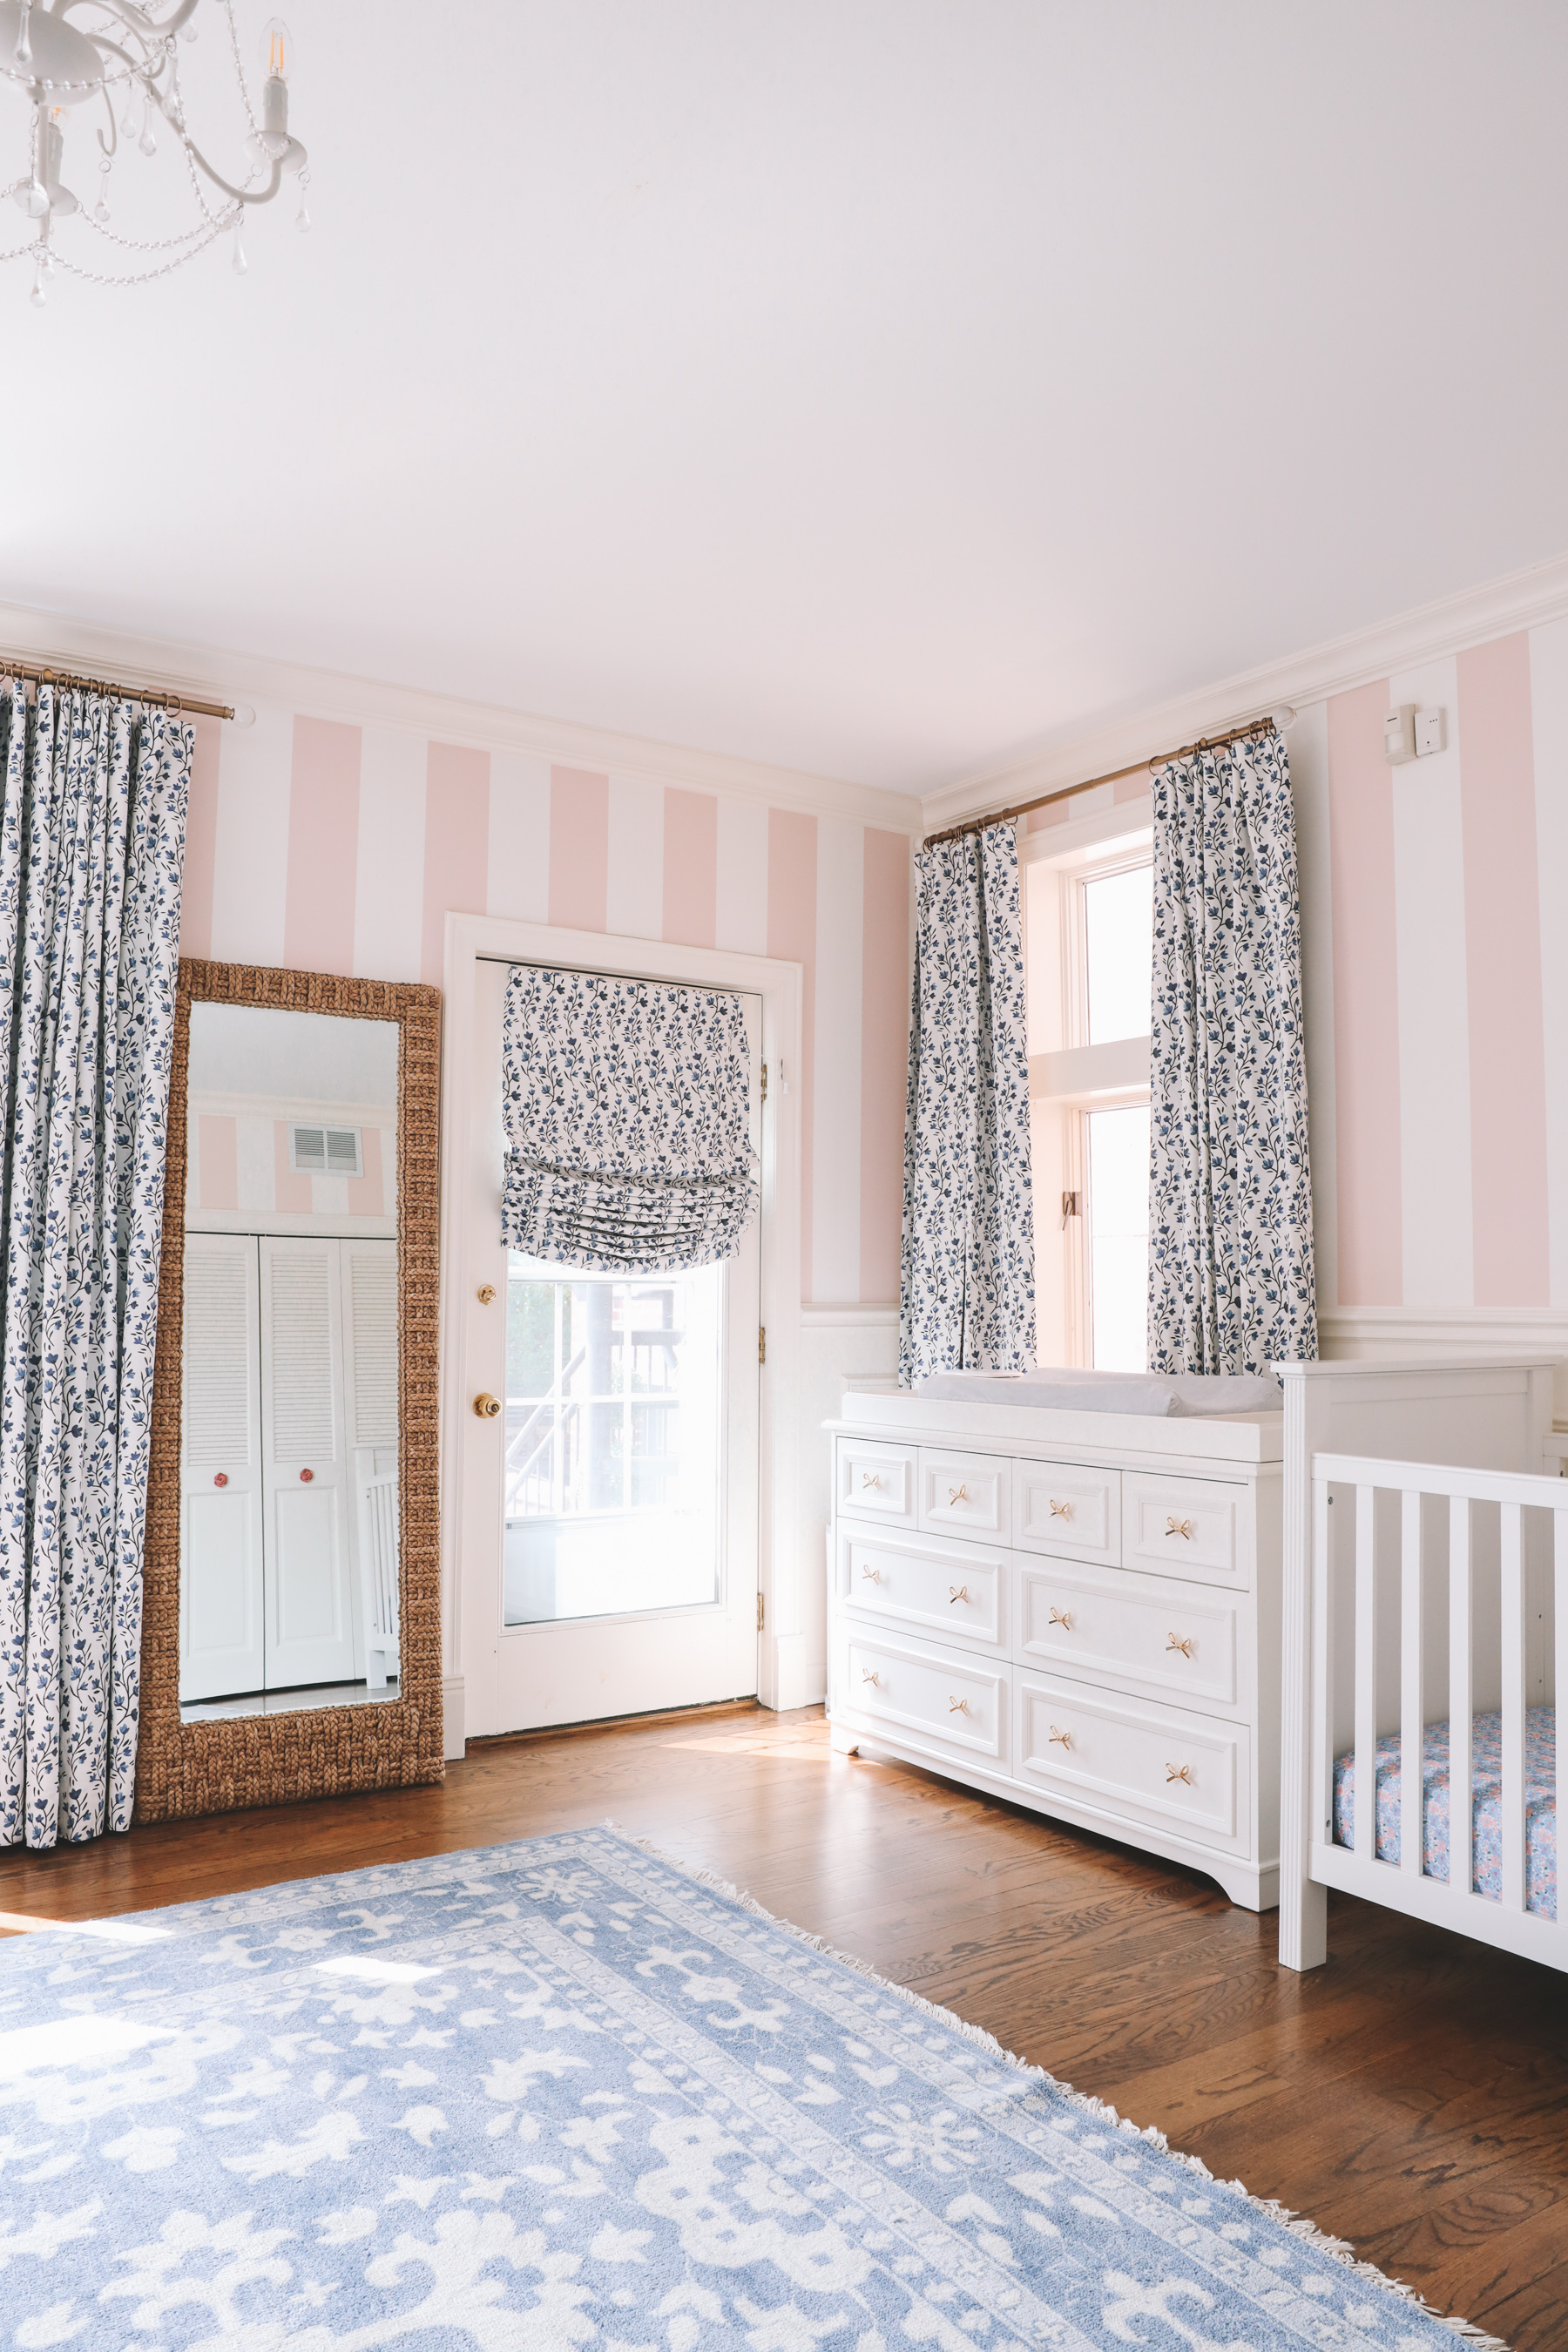 Little girls bedroom design